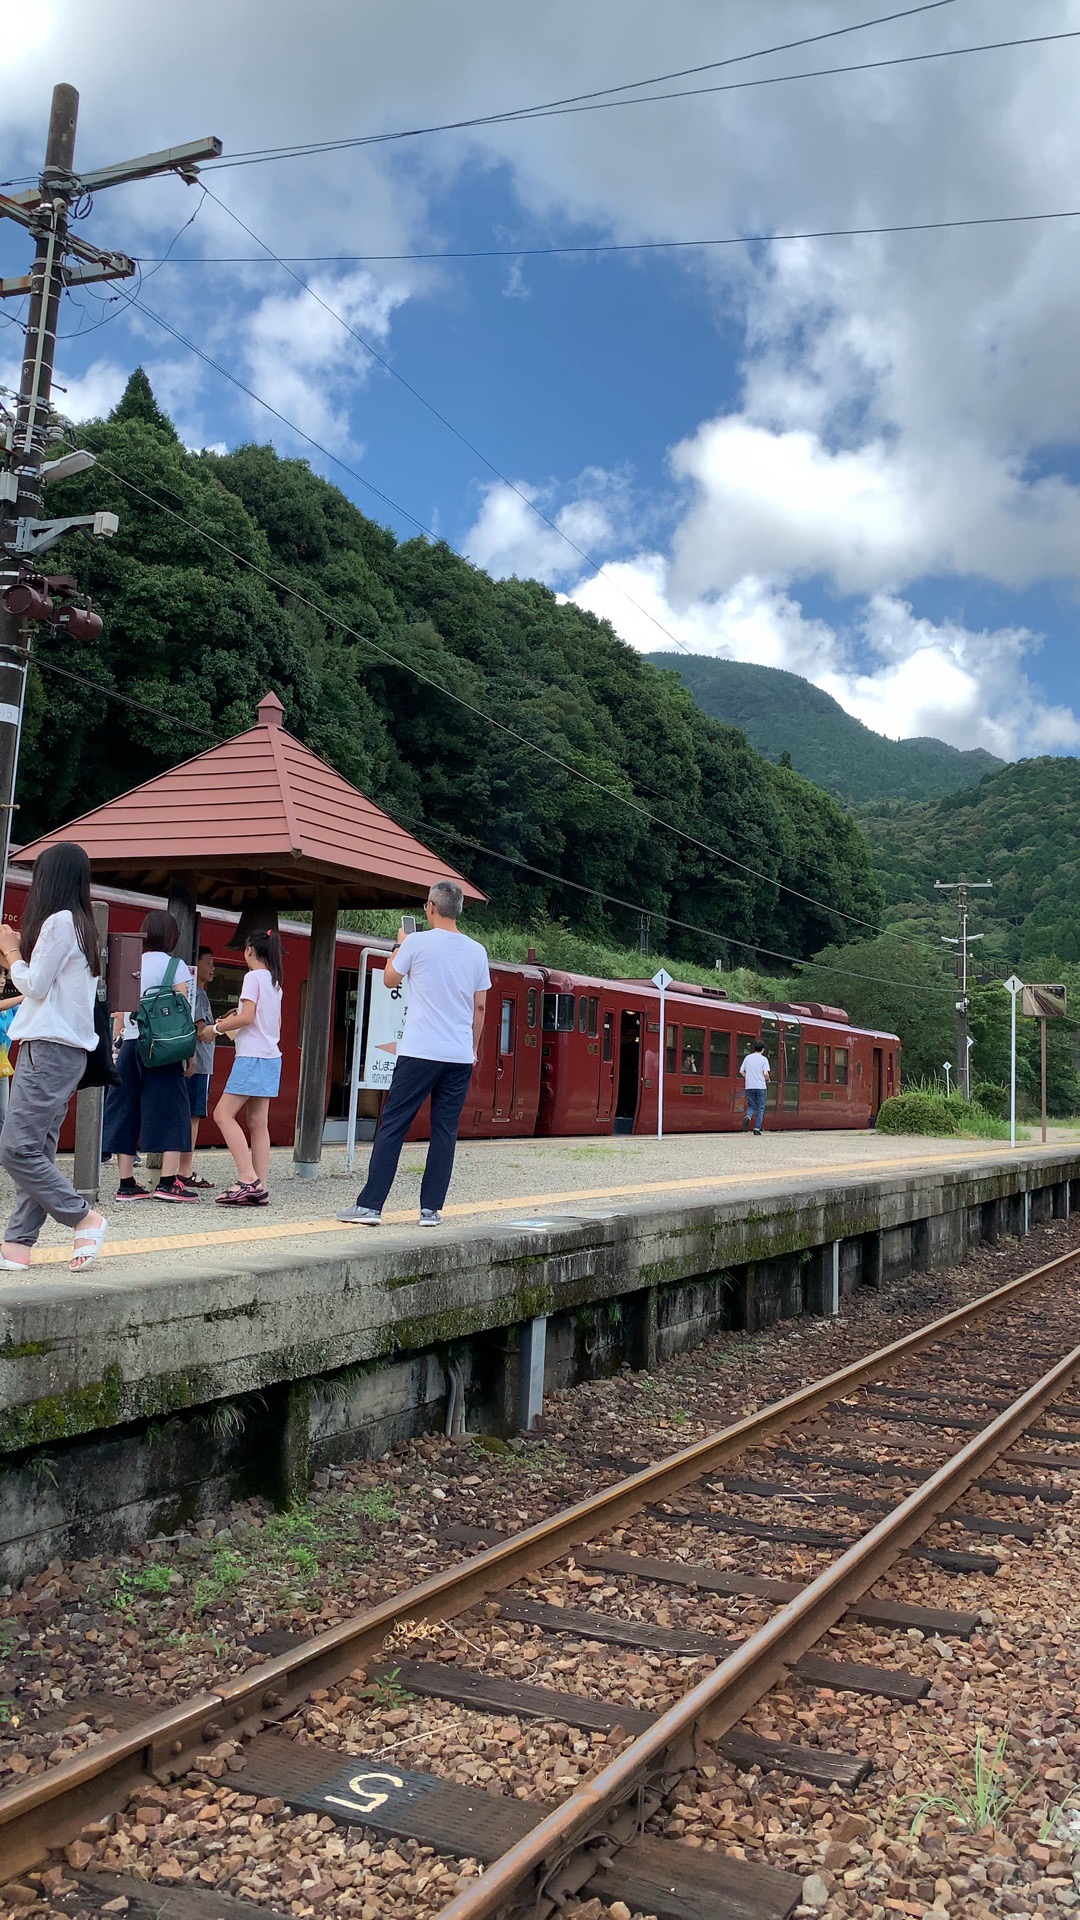 乘坐伊三郎号列车从人吉到吉松，列车停靠无人值守的真幸站